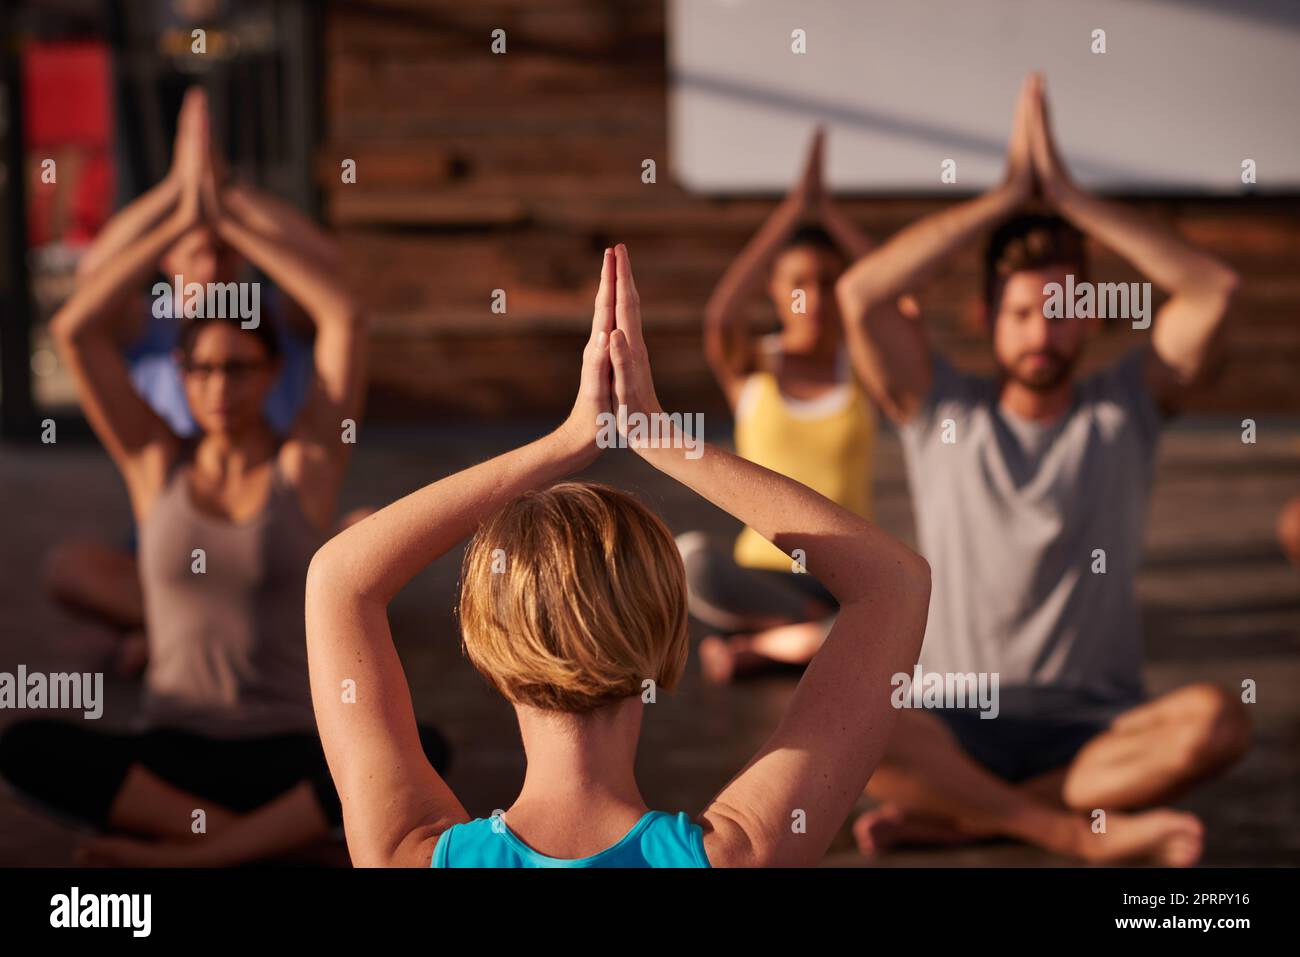 Regiere deinen Geist oder es wird dich regieren. Ein Yogalehrer unterweist ihre Klasse. Stockfoto